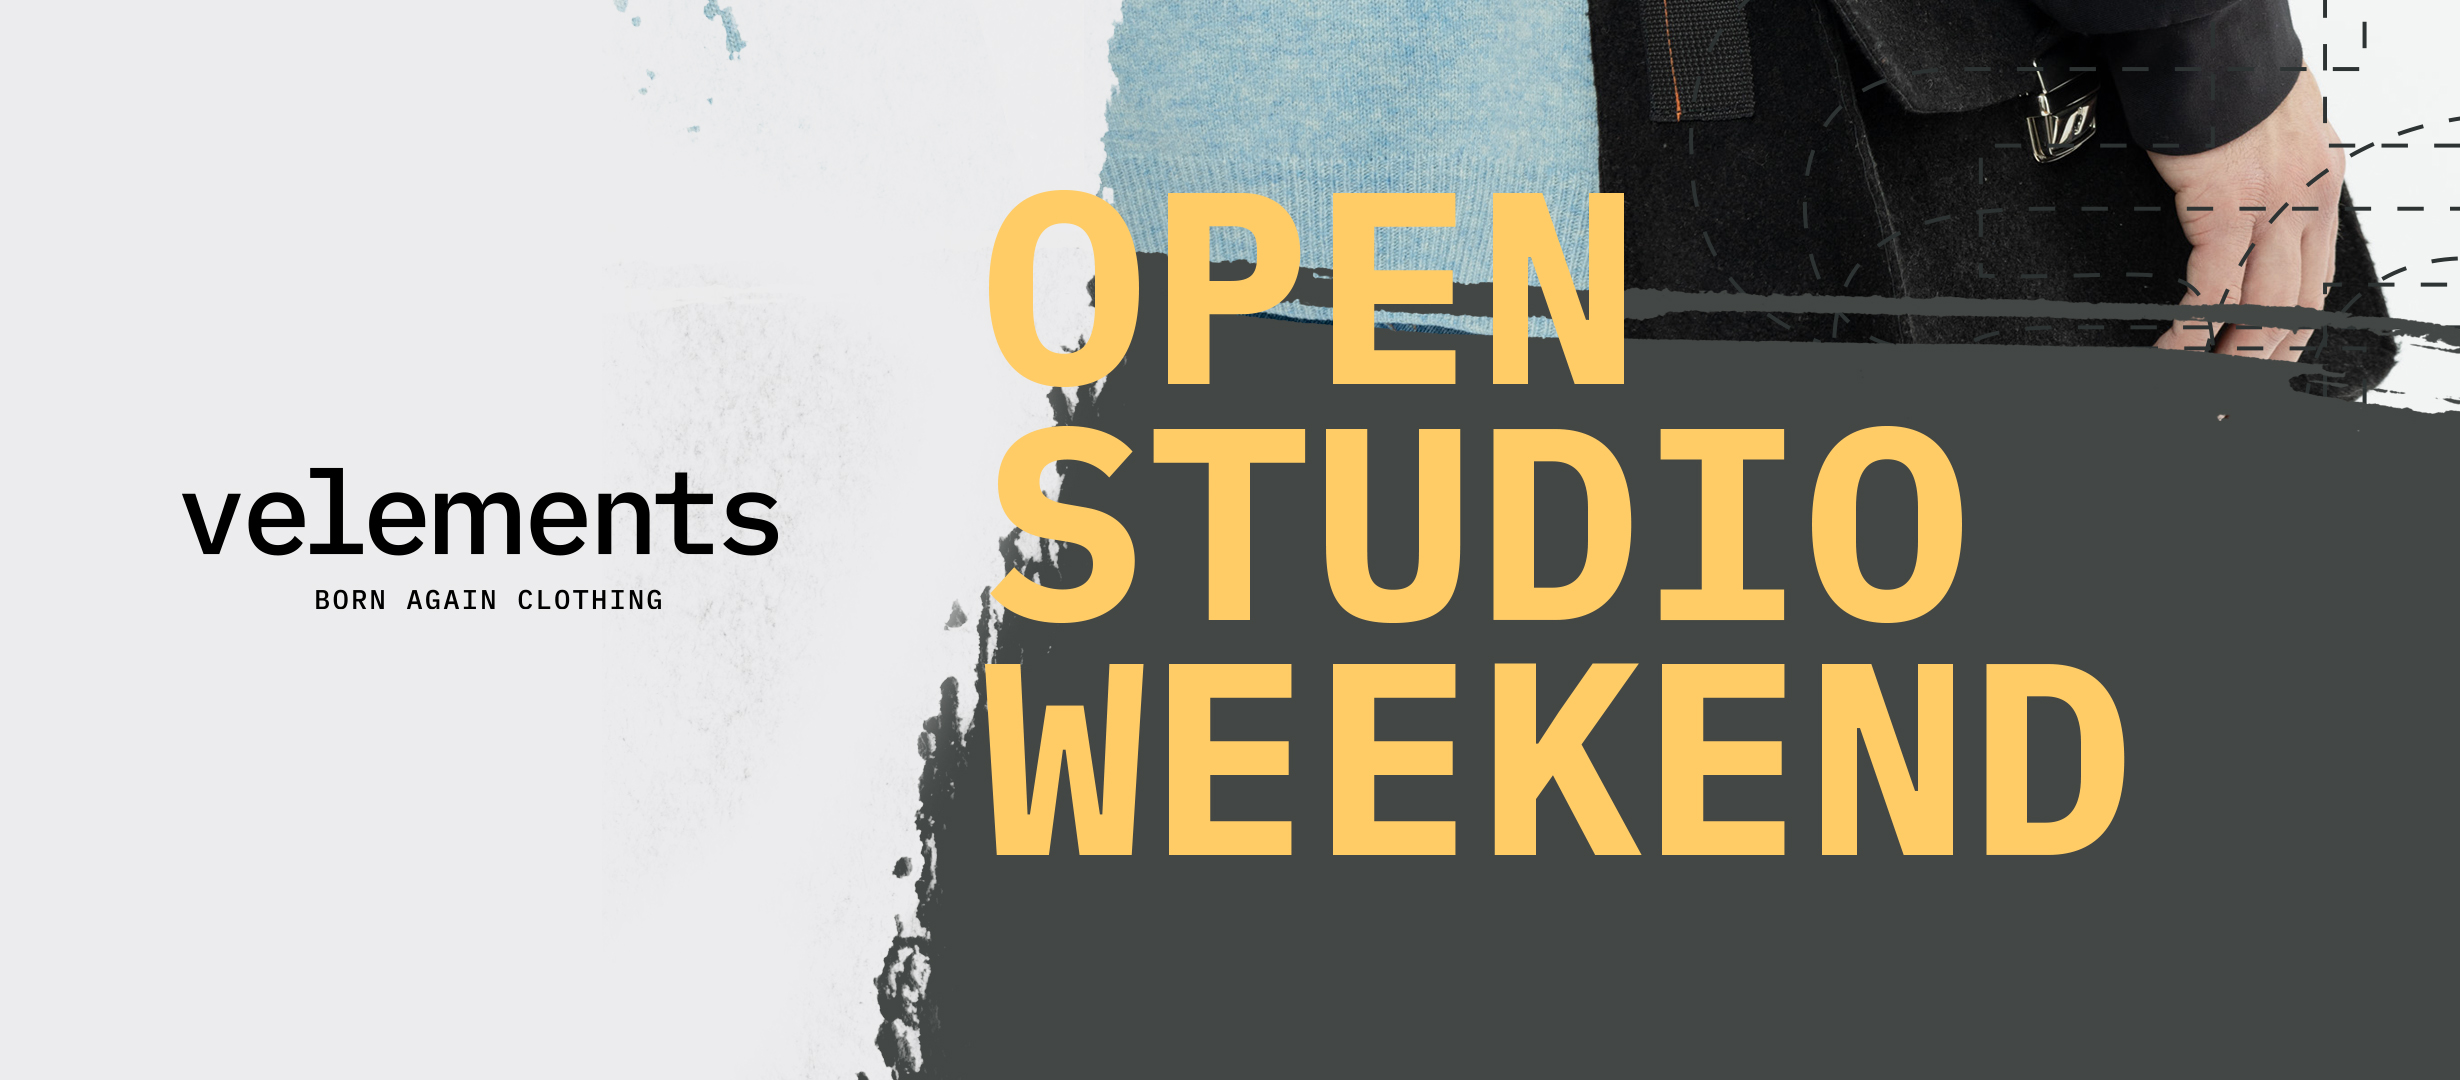 Velements - Open Studio Weekend